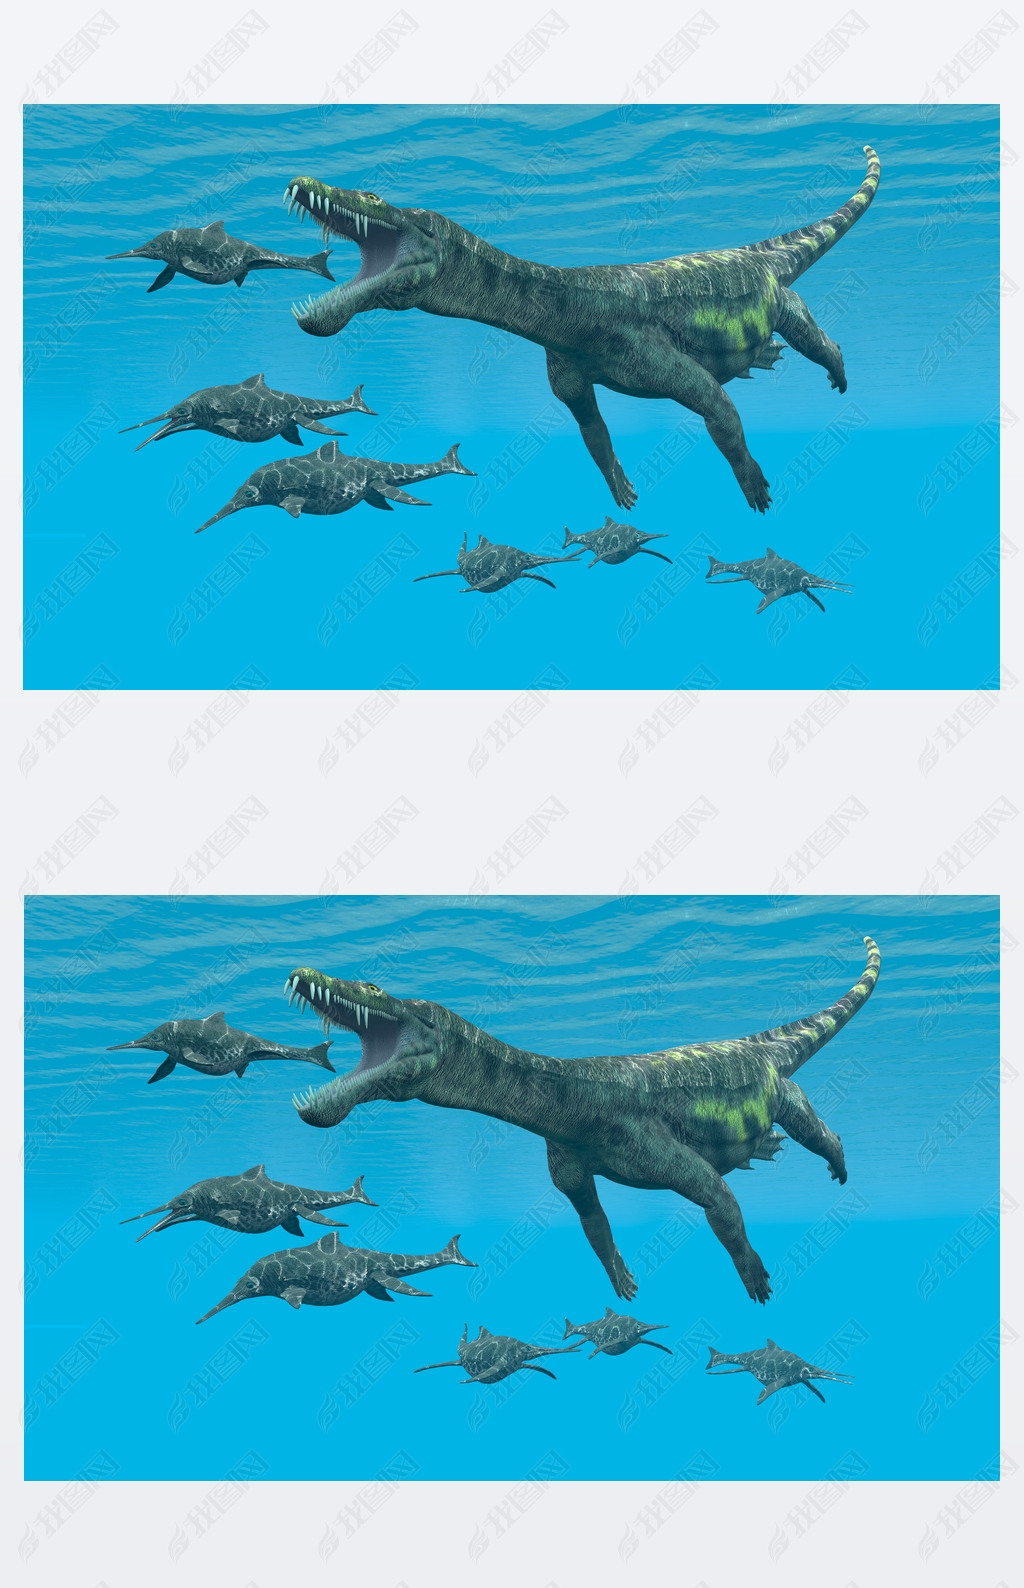  Shonisaurus